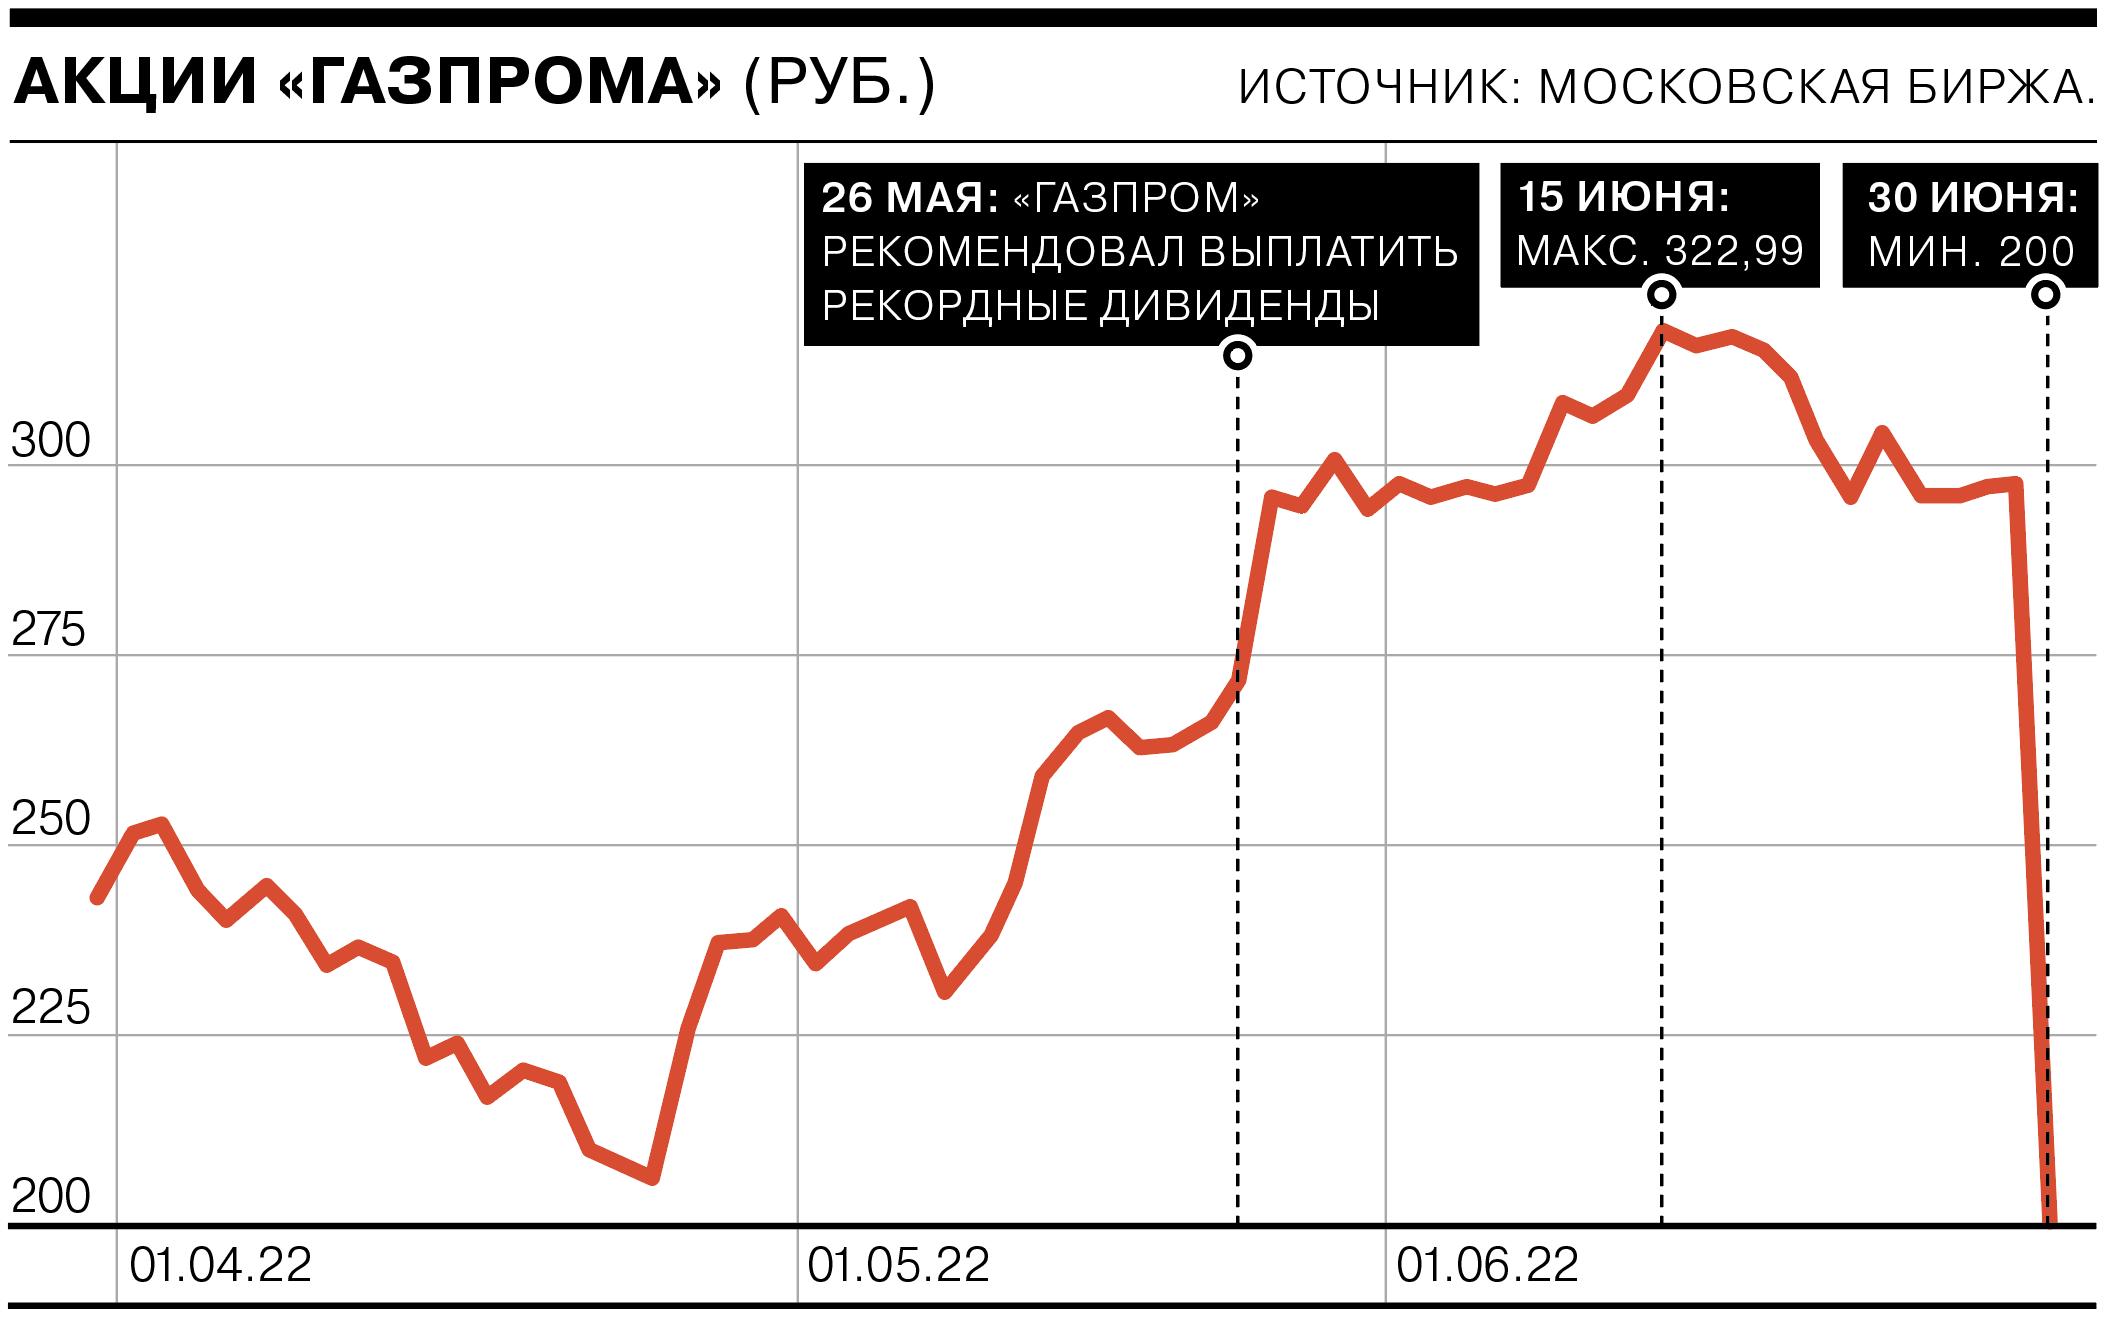 Акции «Газпрома» обвалились после отказа от выплаты дивидендов